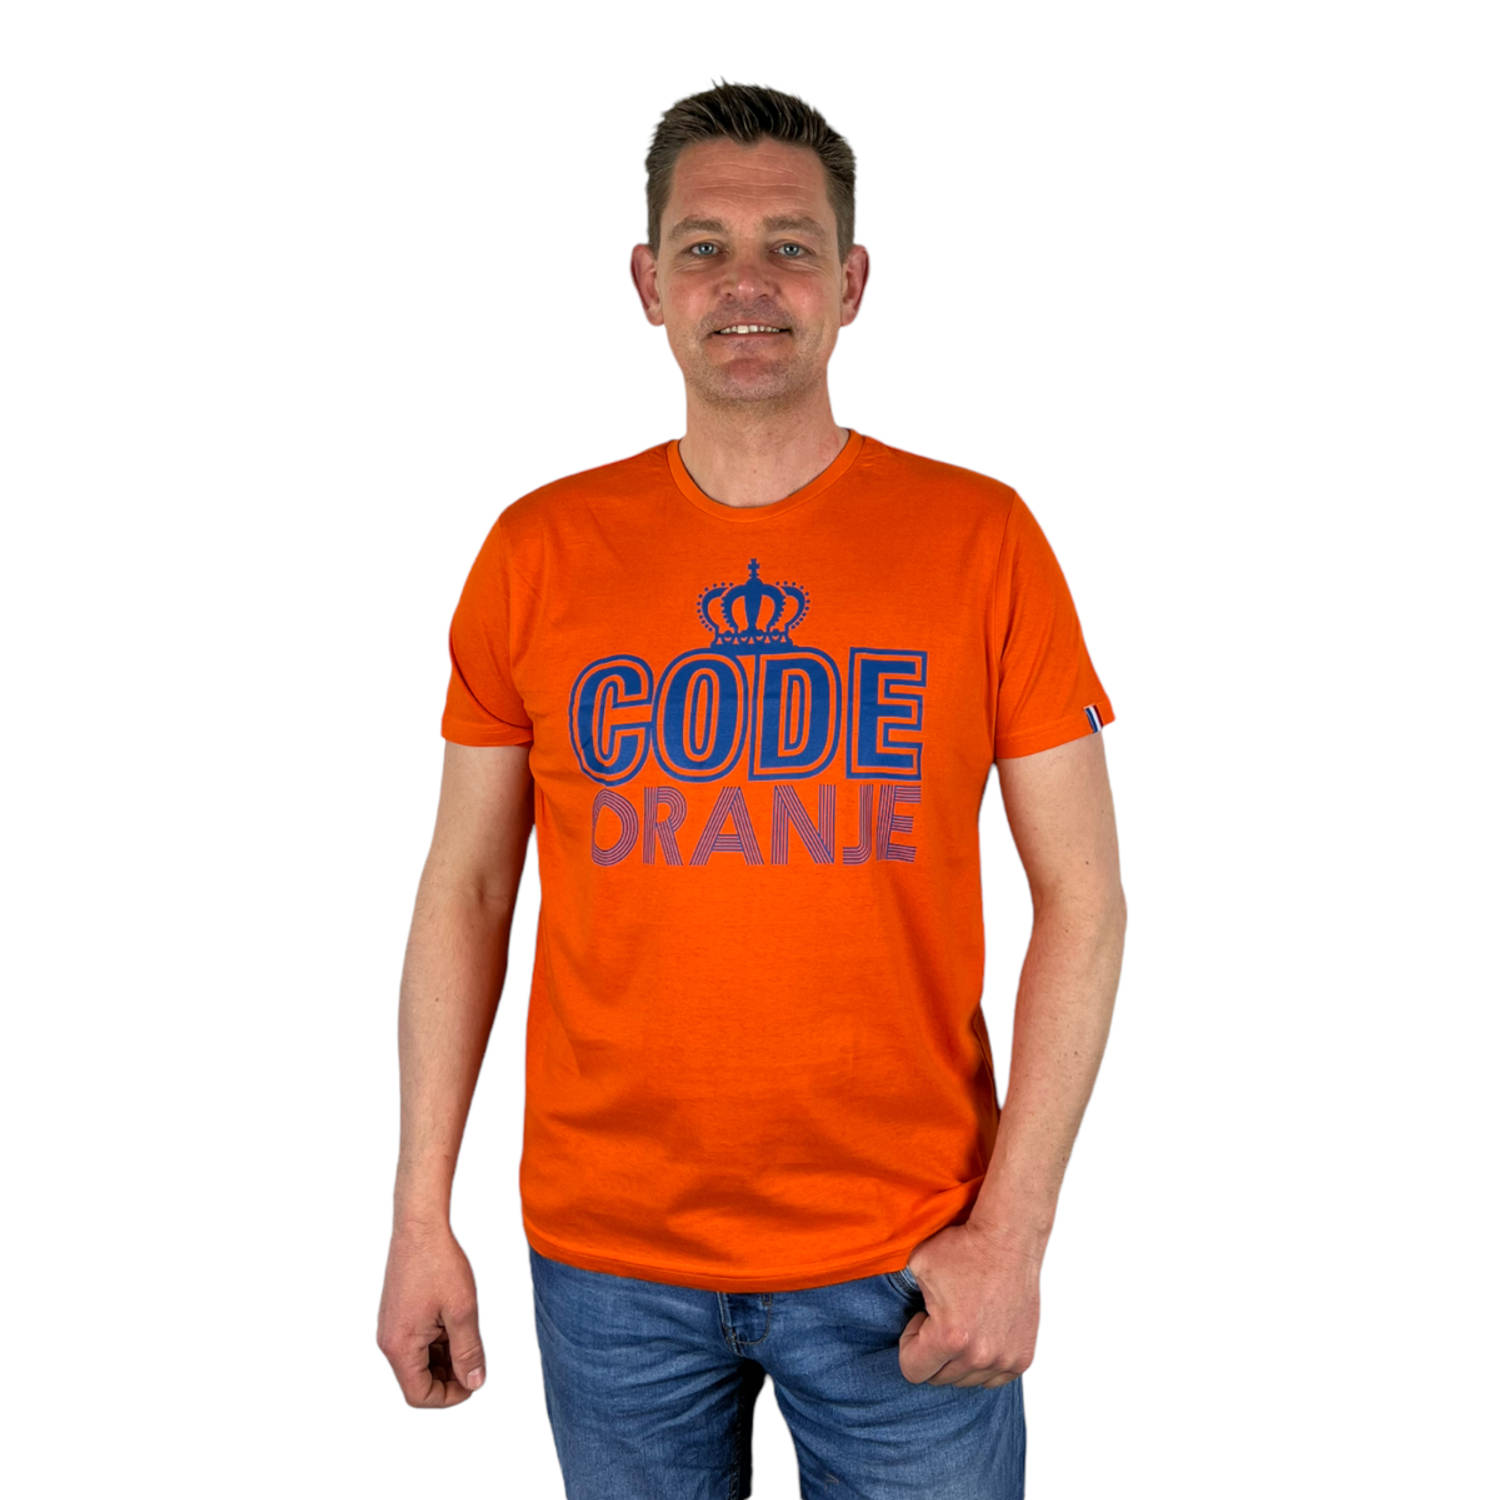 Oranje Heren T-Shirt - Code Oranje - Voor Koningsdag - Holland - Formule 1 - EK/WK Voetbal - Maat L